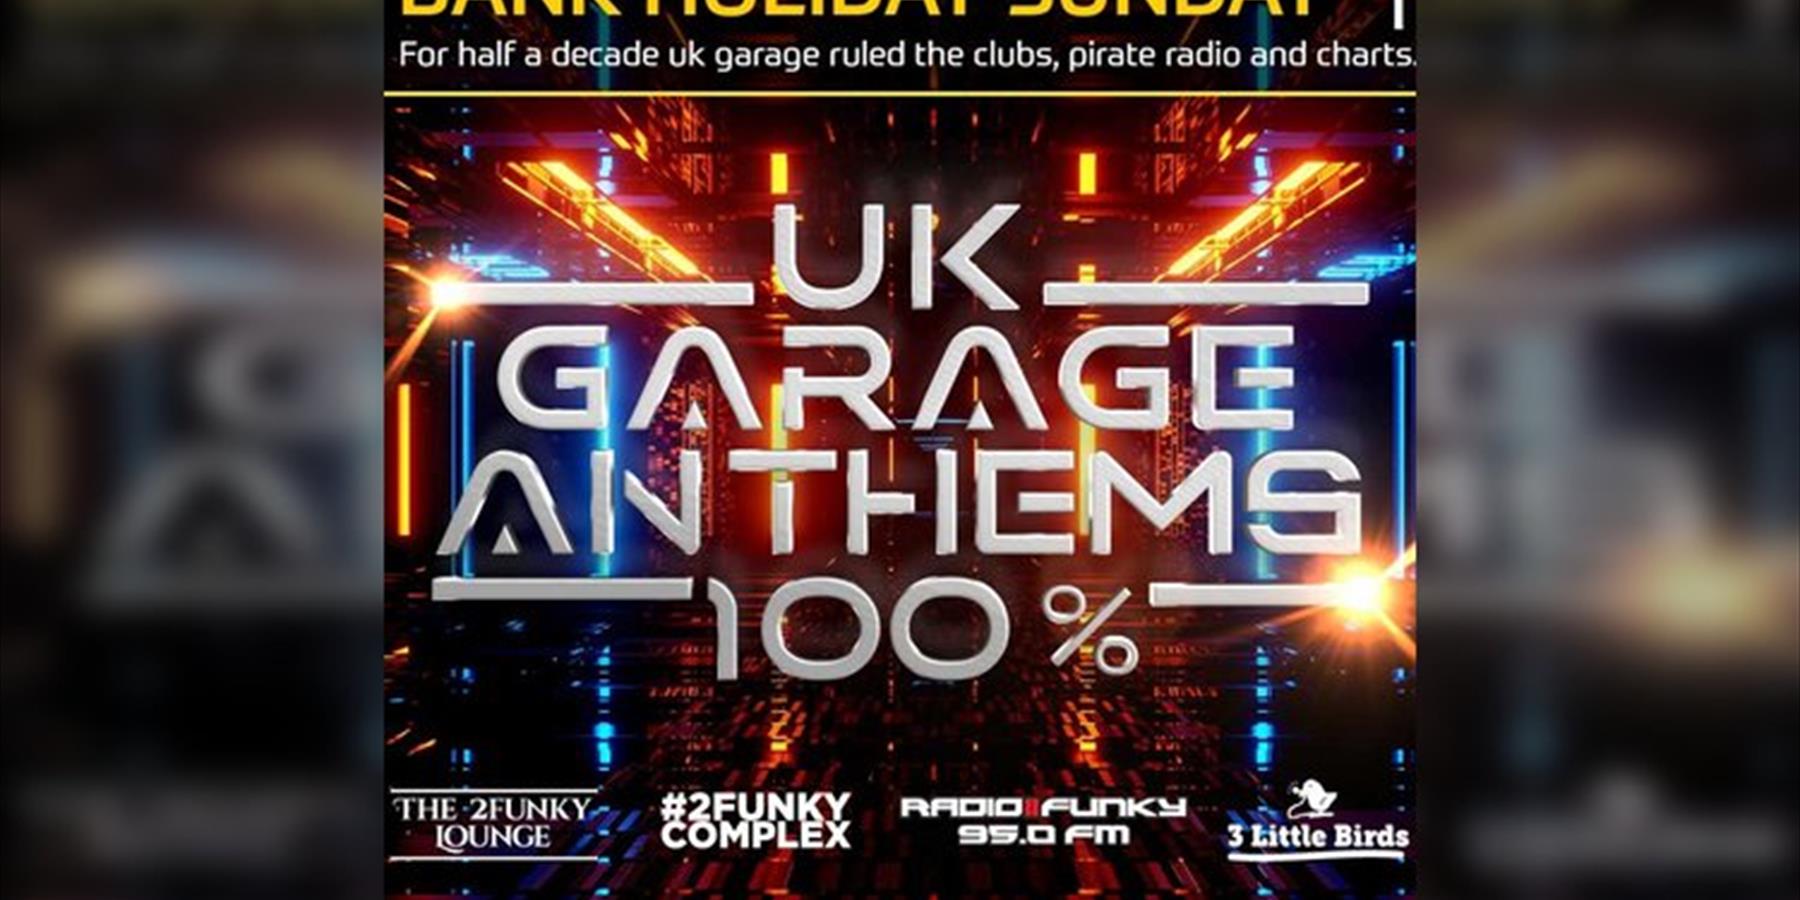 UK Garage Anthems 100%